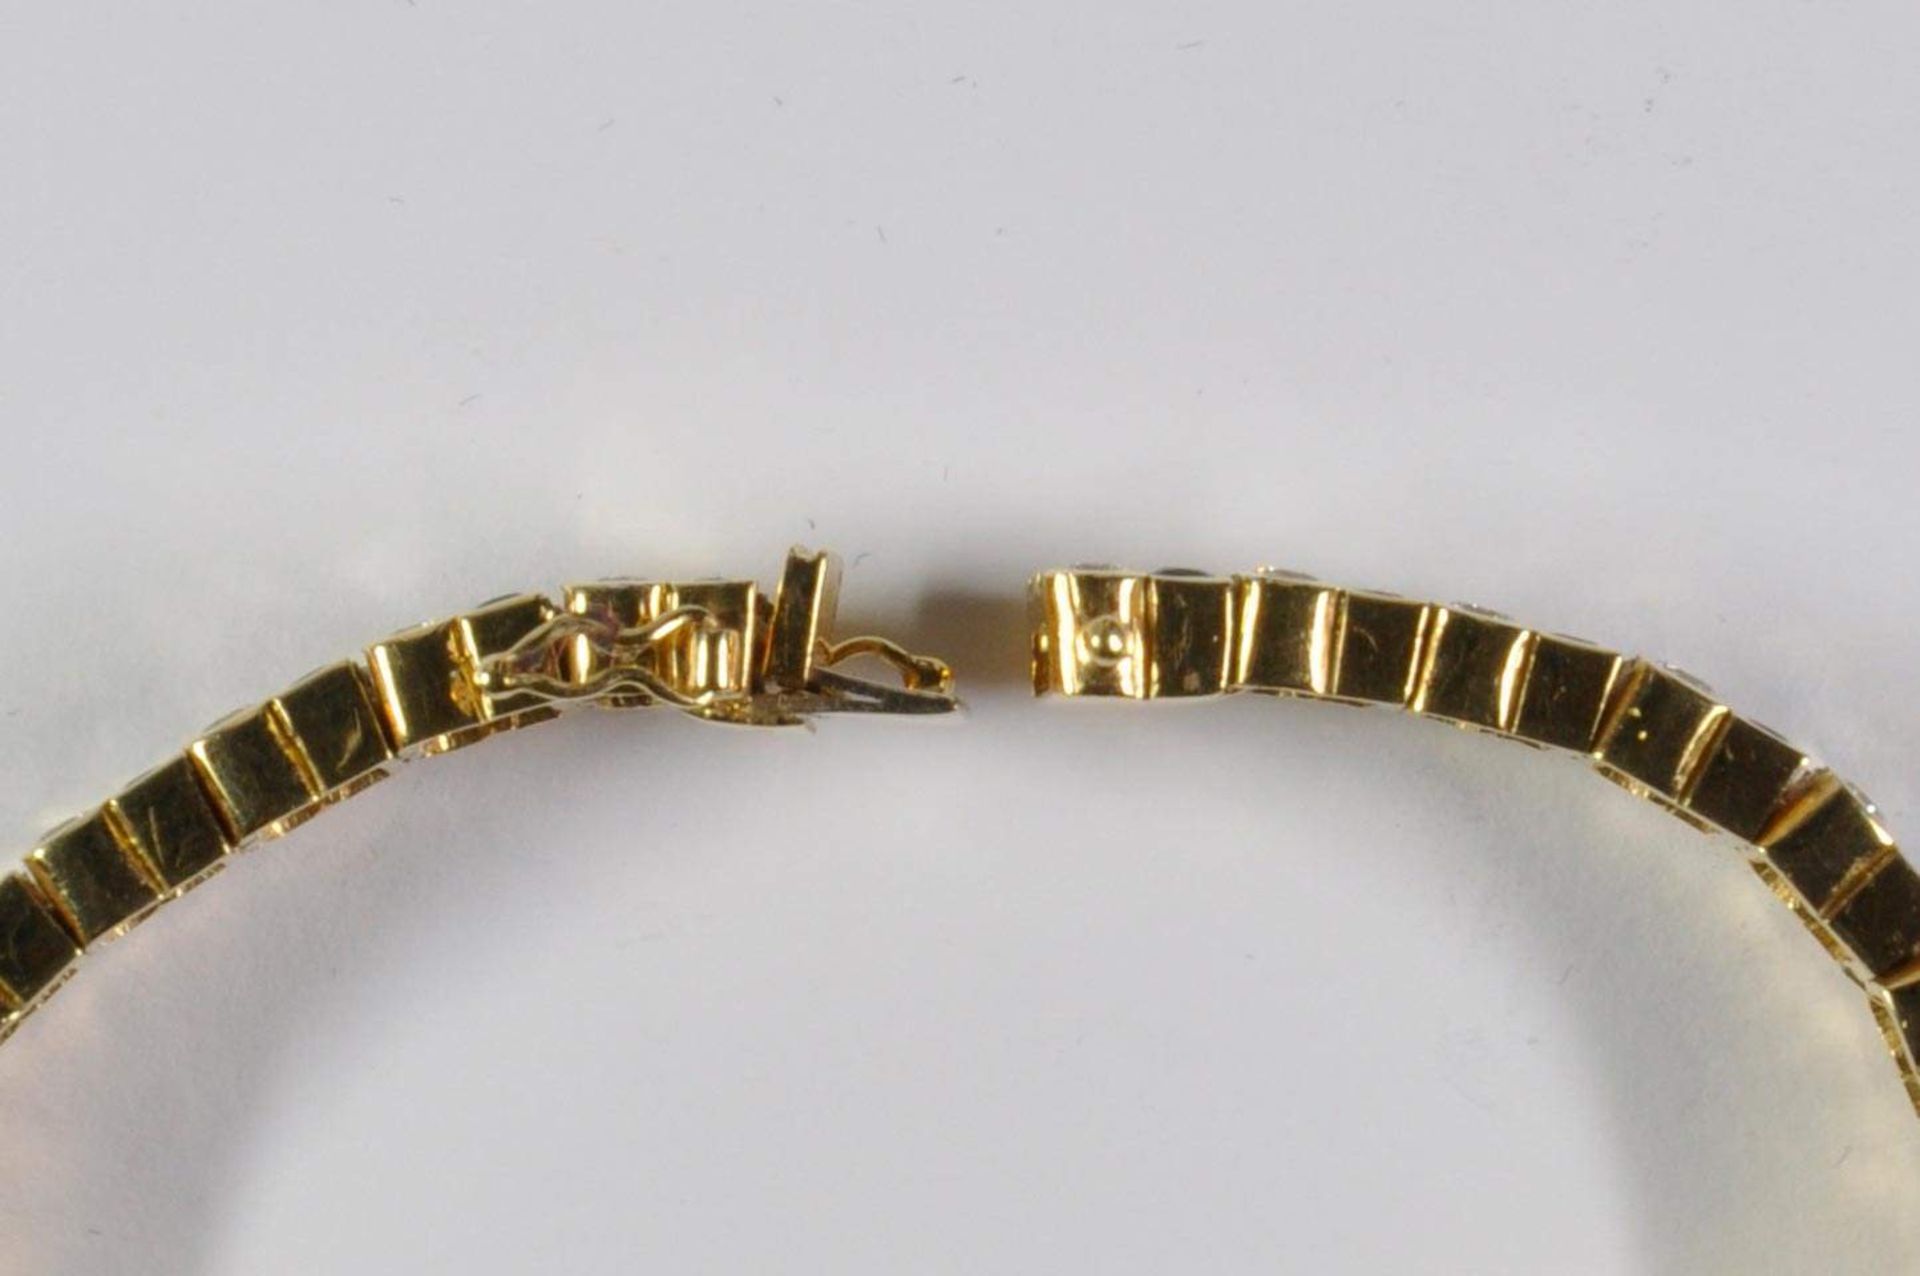 Saphir-Brillant-Armband, 750 Gelbgold, Punze, 66 Brillanten von zus. ca. 3,2ct, 64 Saphiren von zus. - Bild 13 aus 20